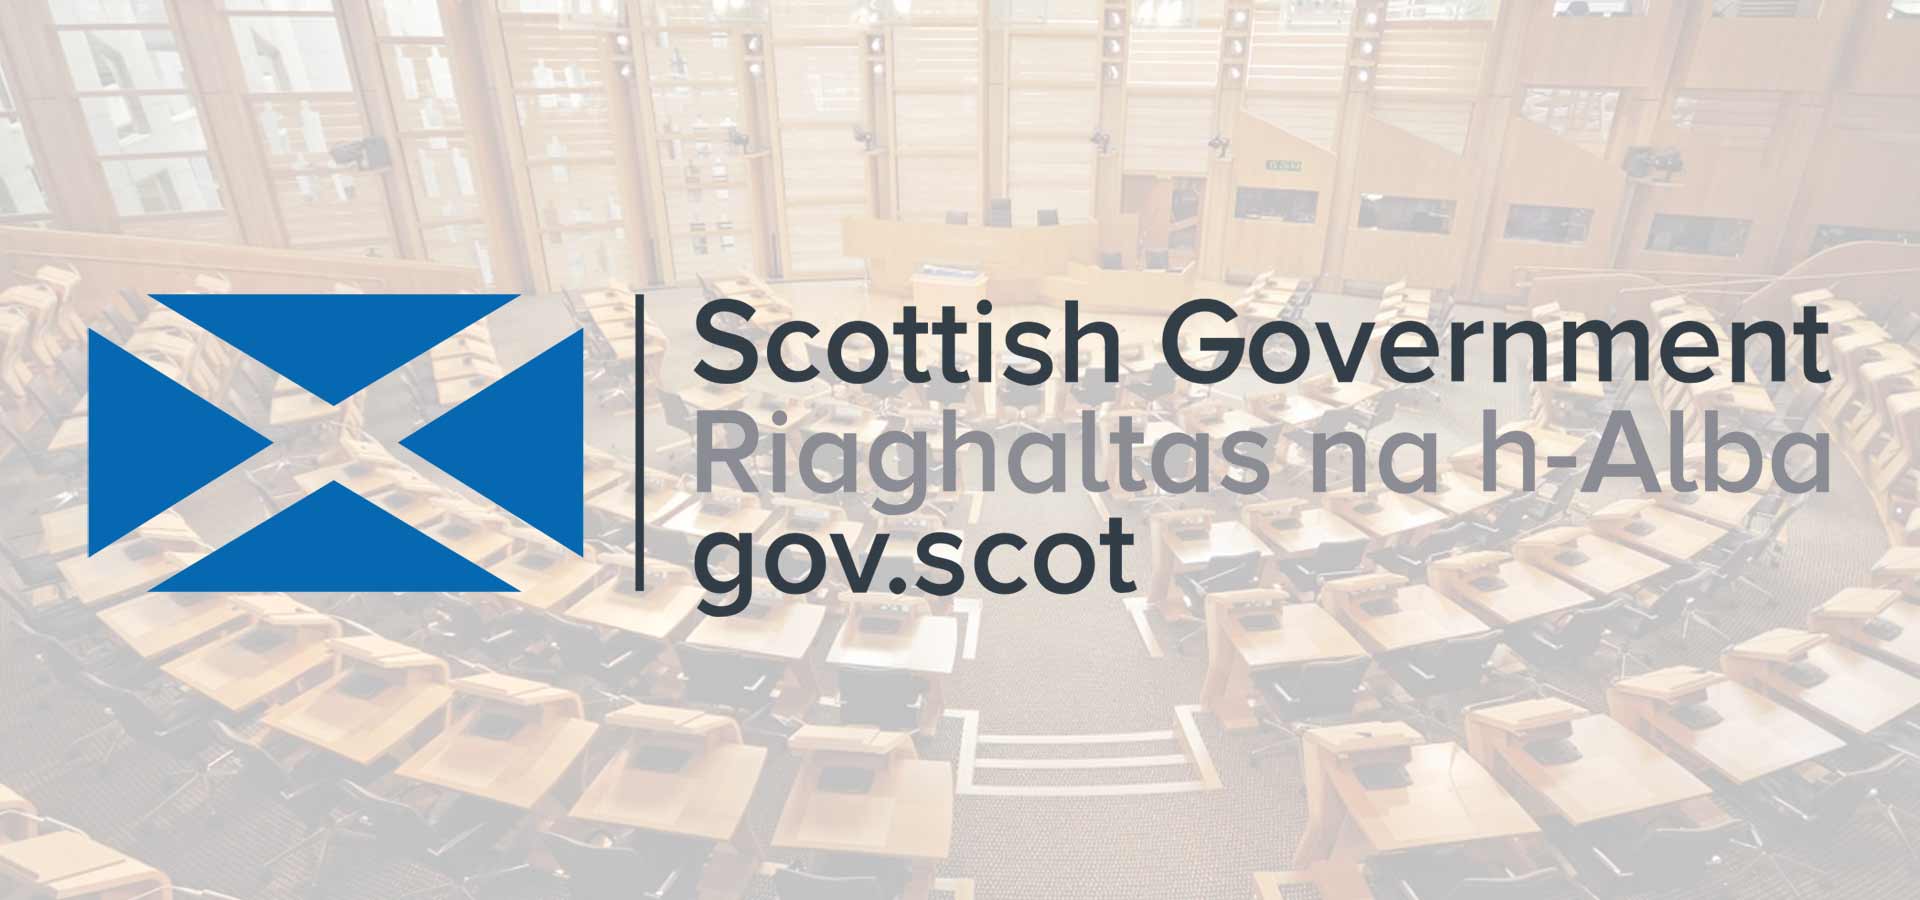 Kutatási együttműködési programot hirdetett a skót kormány